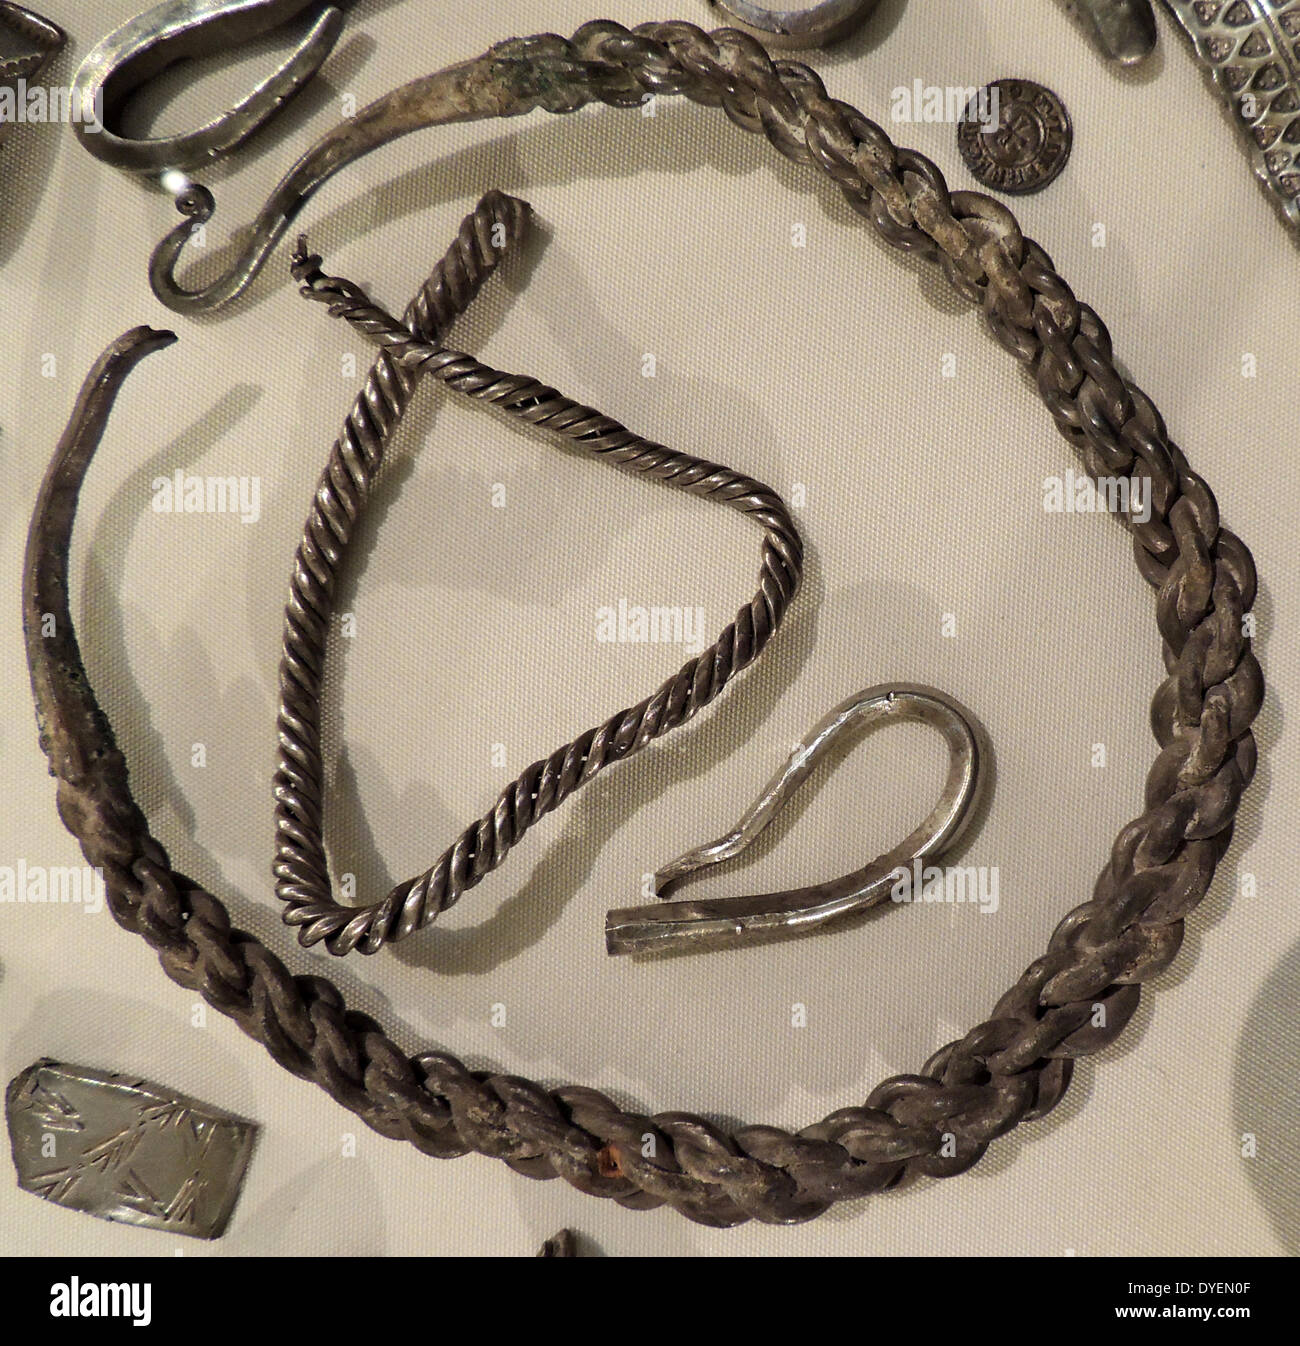 Die cuerdale Horten. Dies ist eine Auswahl aus der größten Viking silver Hoard aus Westeuropa bekannt. Es wurde 1840 entdeckt, neben dem Fluss Ribble an Cuerdale, Lancashire begraben. Die Horten enthält einige 7500 Münzen, plus Objekte in Silber. Auf rund AD 905 datiert, es kann ein Krieg gewesen - Brust durch die Vikings aus Irland bevorratet. Stockfoto